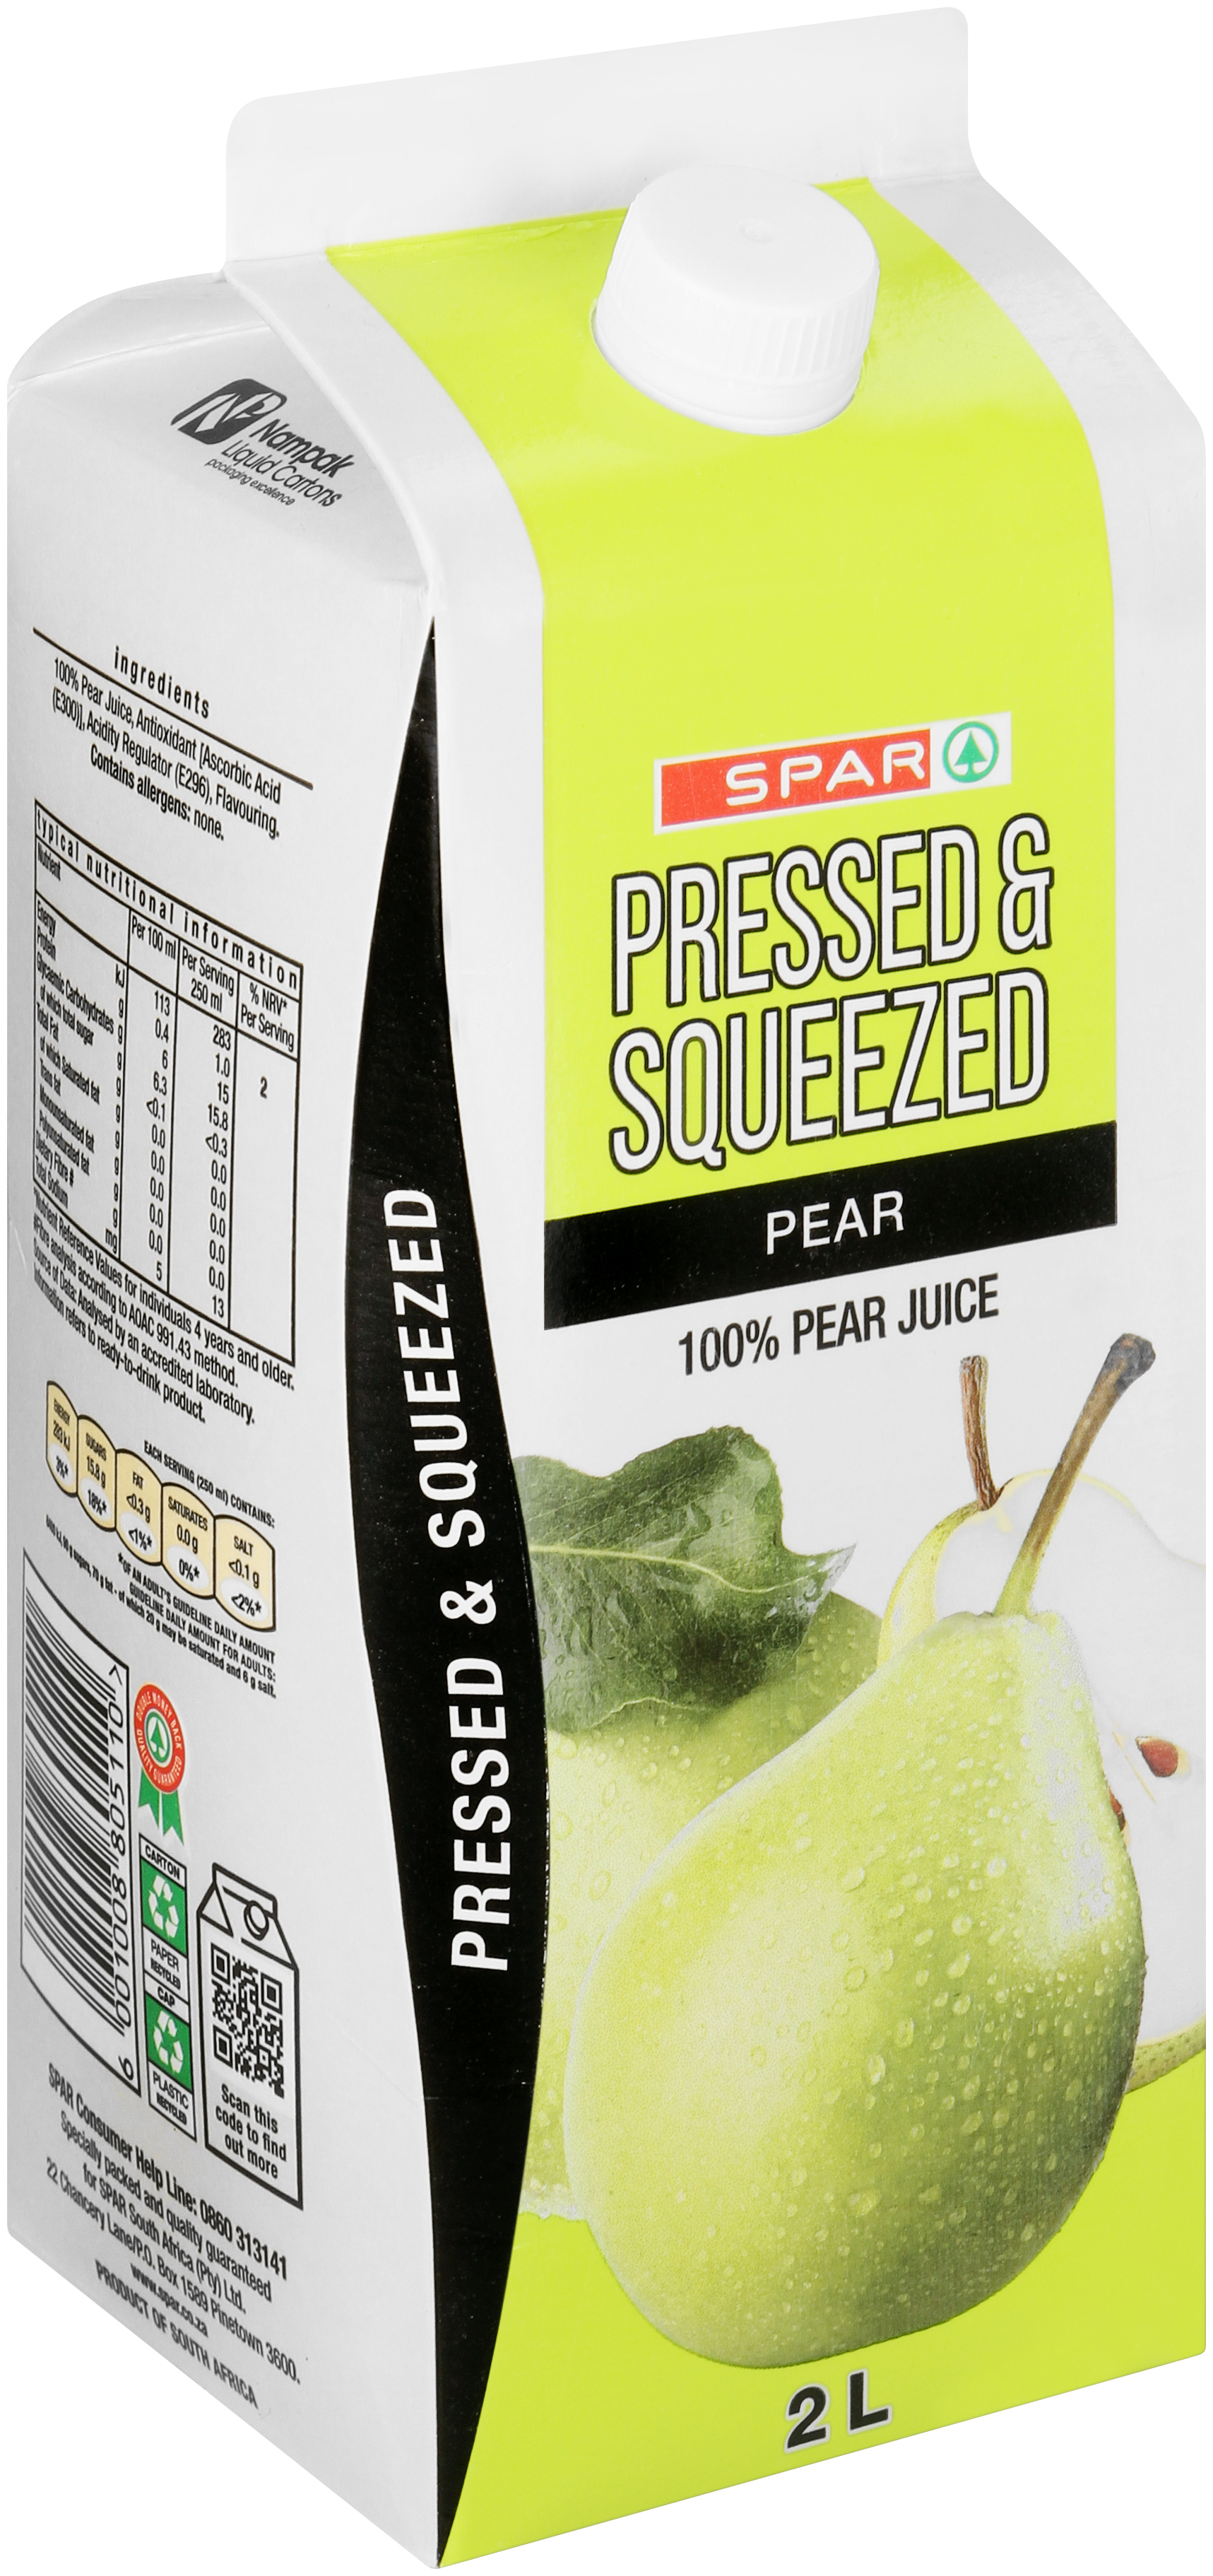 100% fruit juice - pear